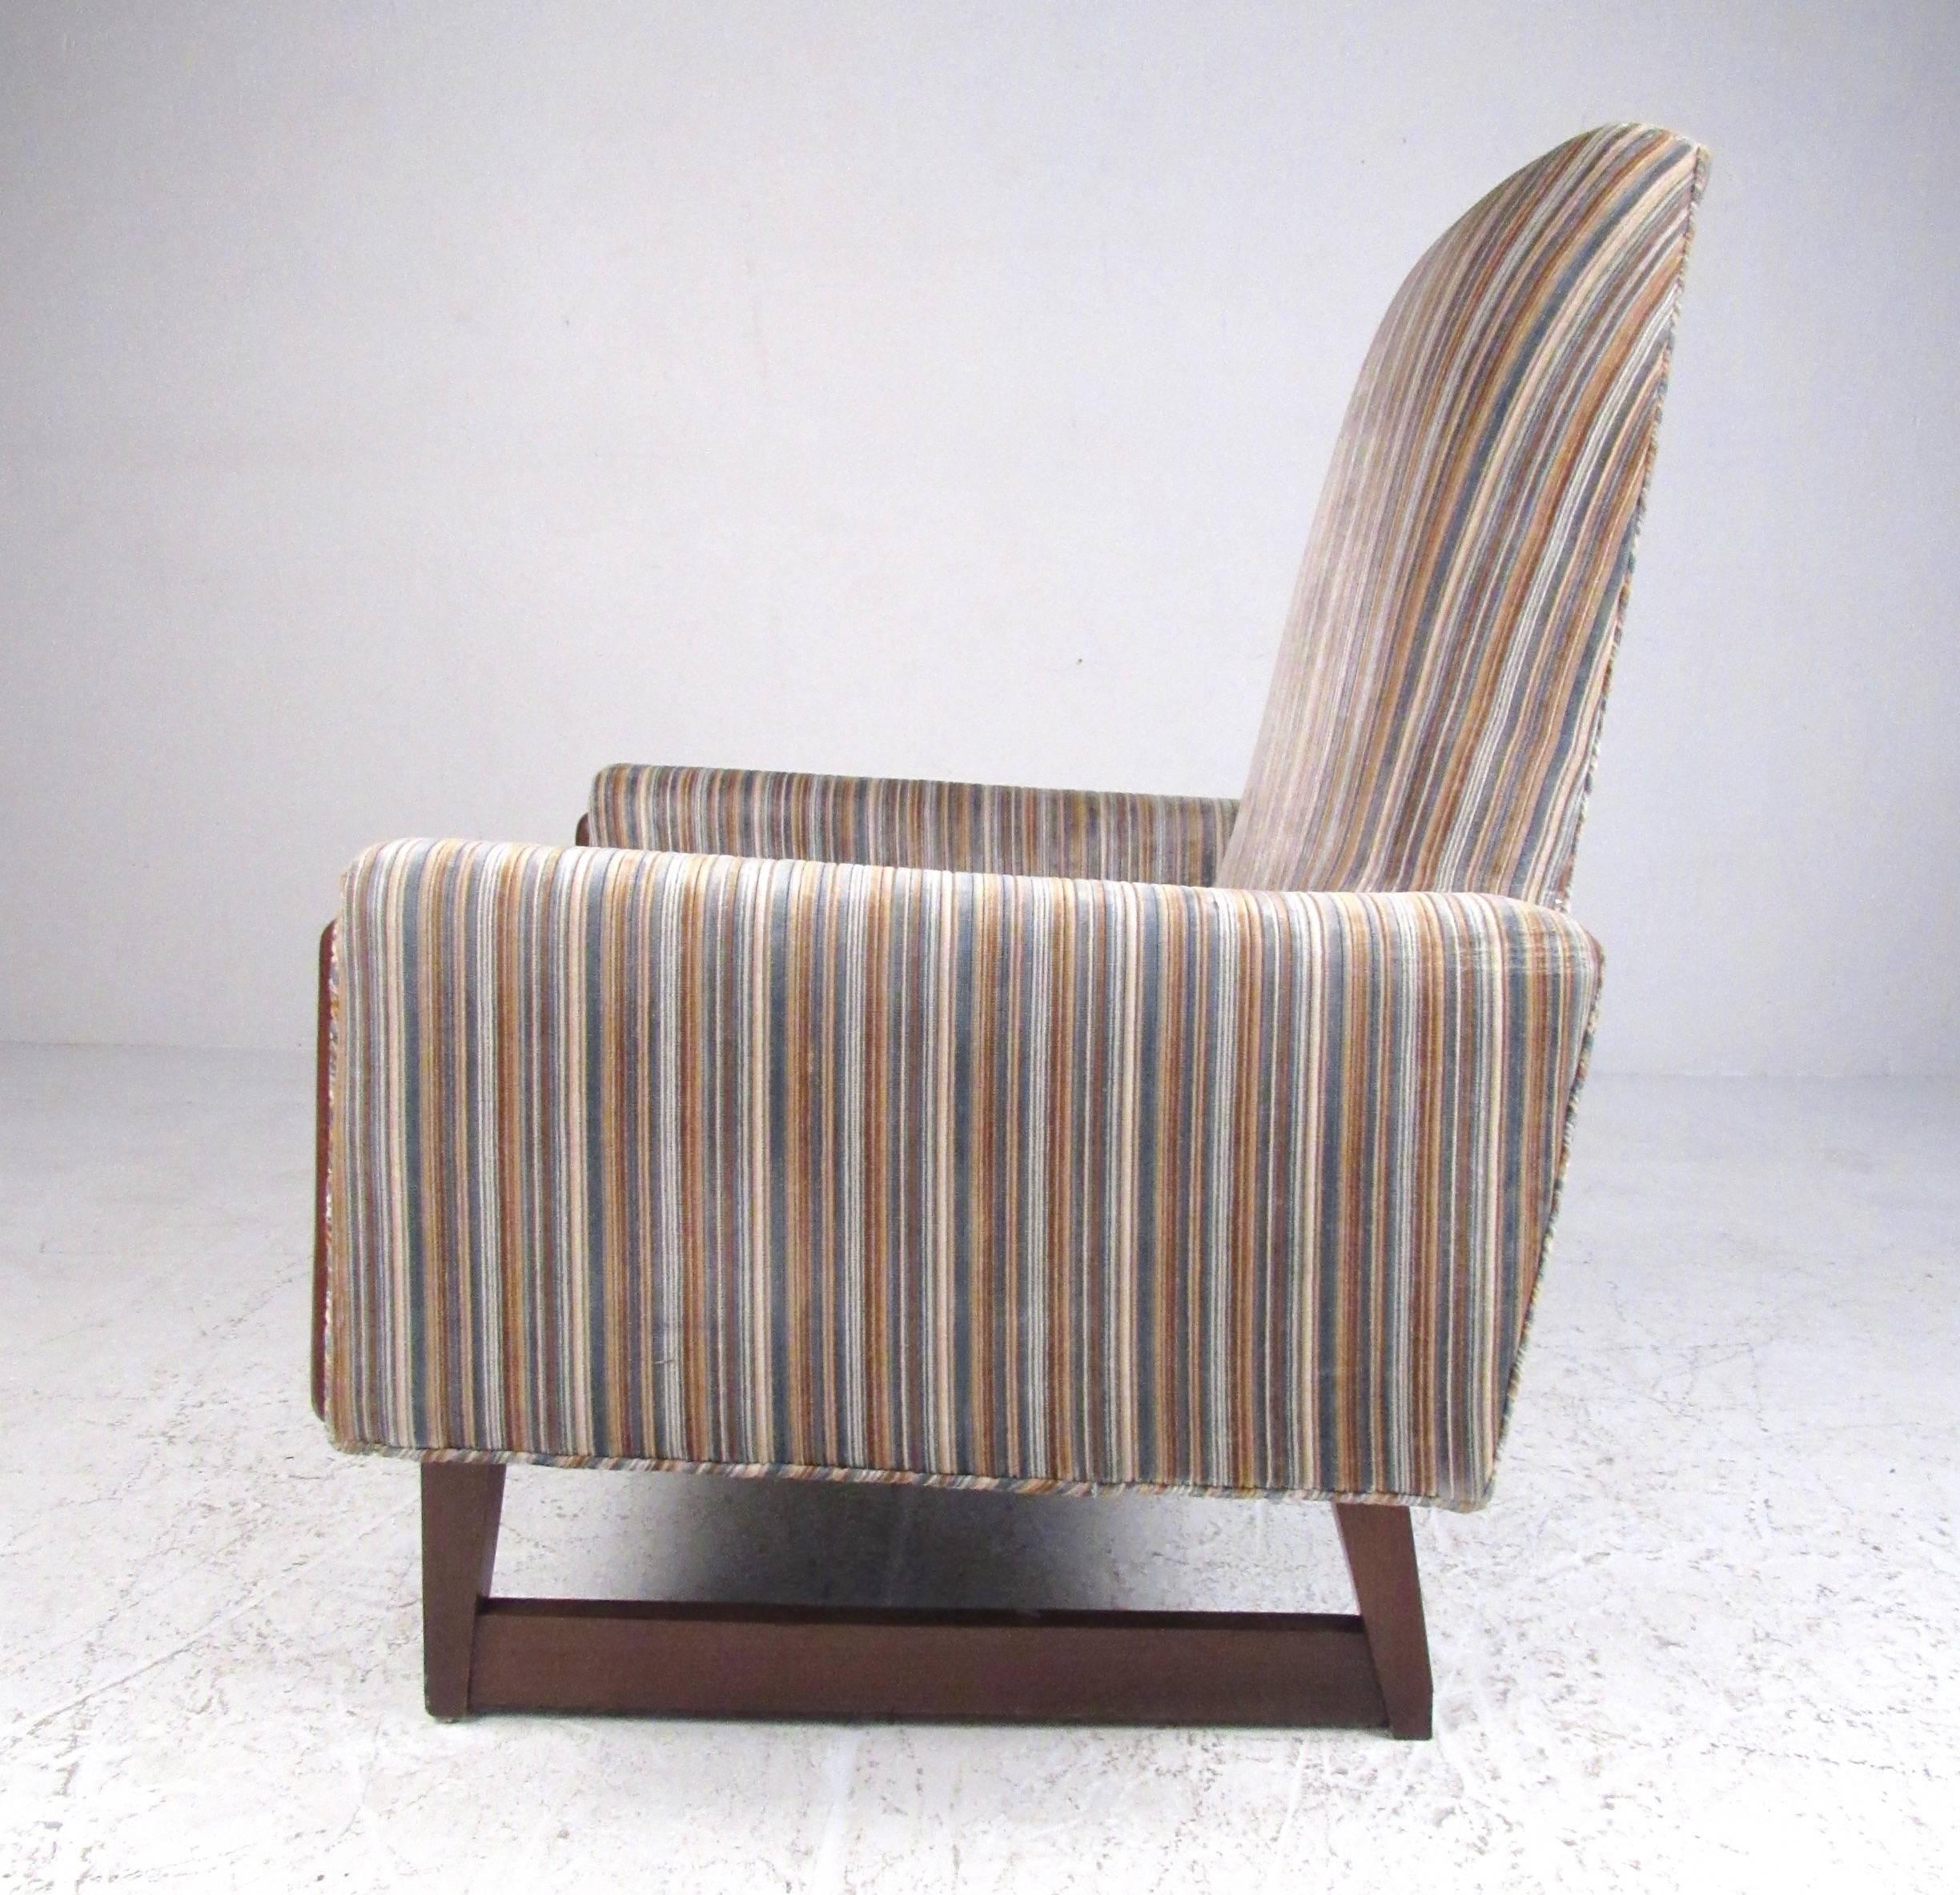 Ce fauteuil de salon vintage unique présente un haut dossier sculpté, une garniture en noyer unique et un tissu rayé vintage. Les pieds en forme de traîneau ajoutent à l'attrait moderne du milieu du siècle de cette chaise de style Adrian Pearsall.